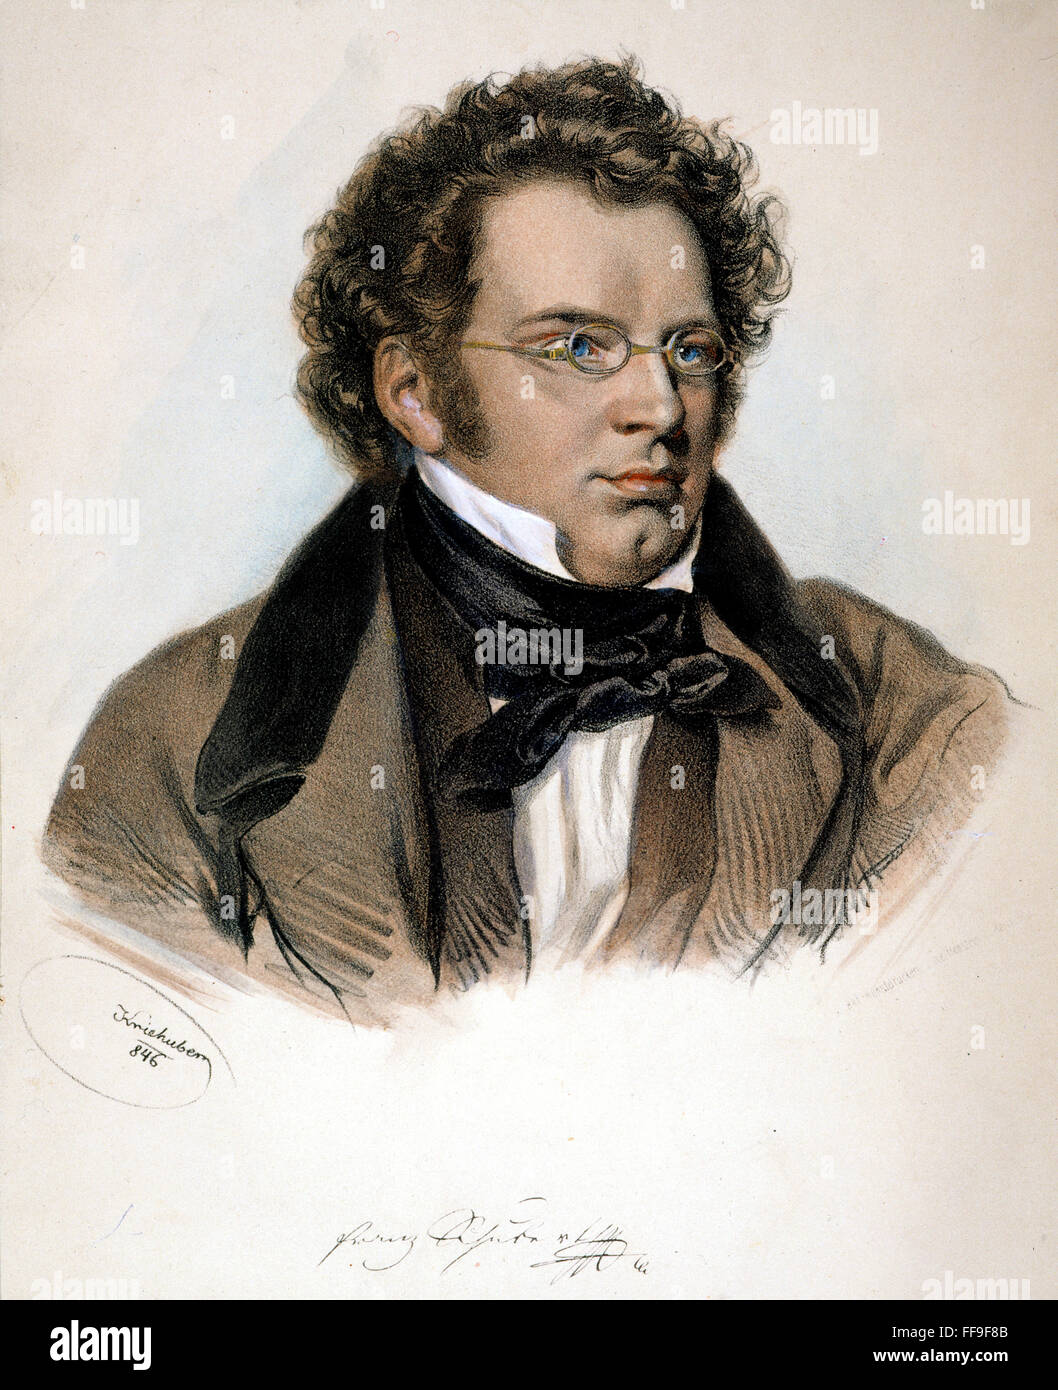 FRANZ PETER SCHUBERT /n(1797-1828): lithograph by Joseph Kriehuber (1800-1876). Stock Photo